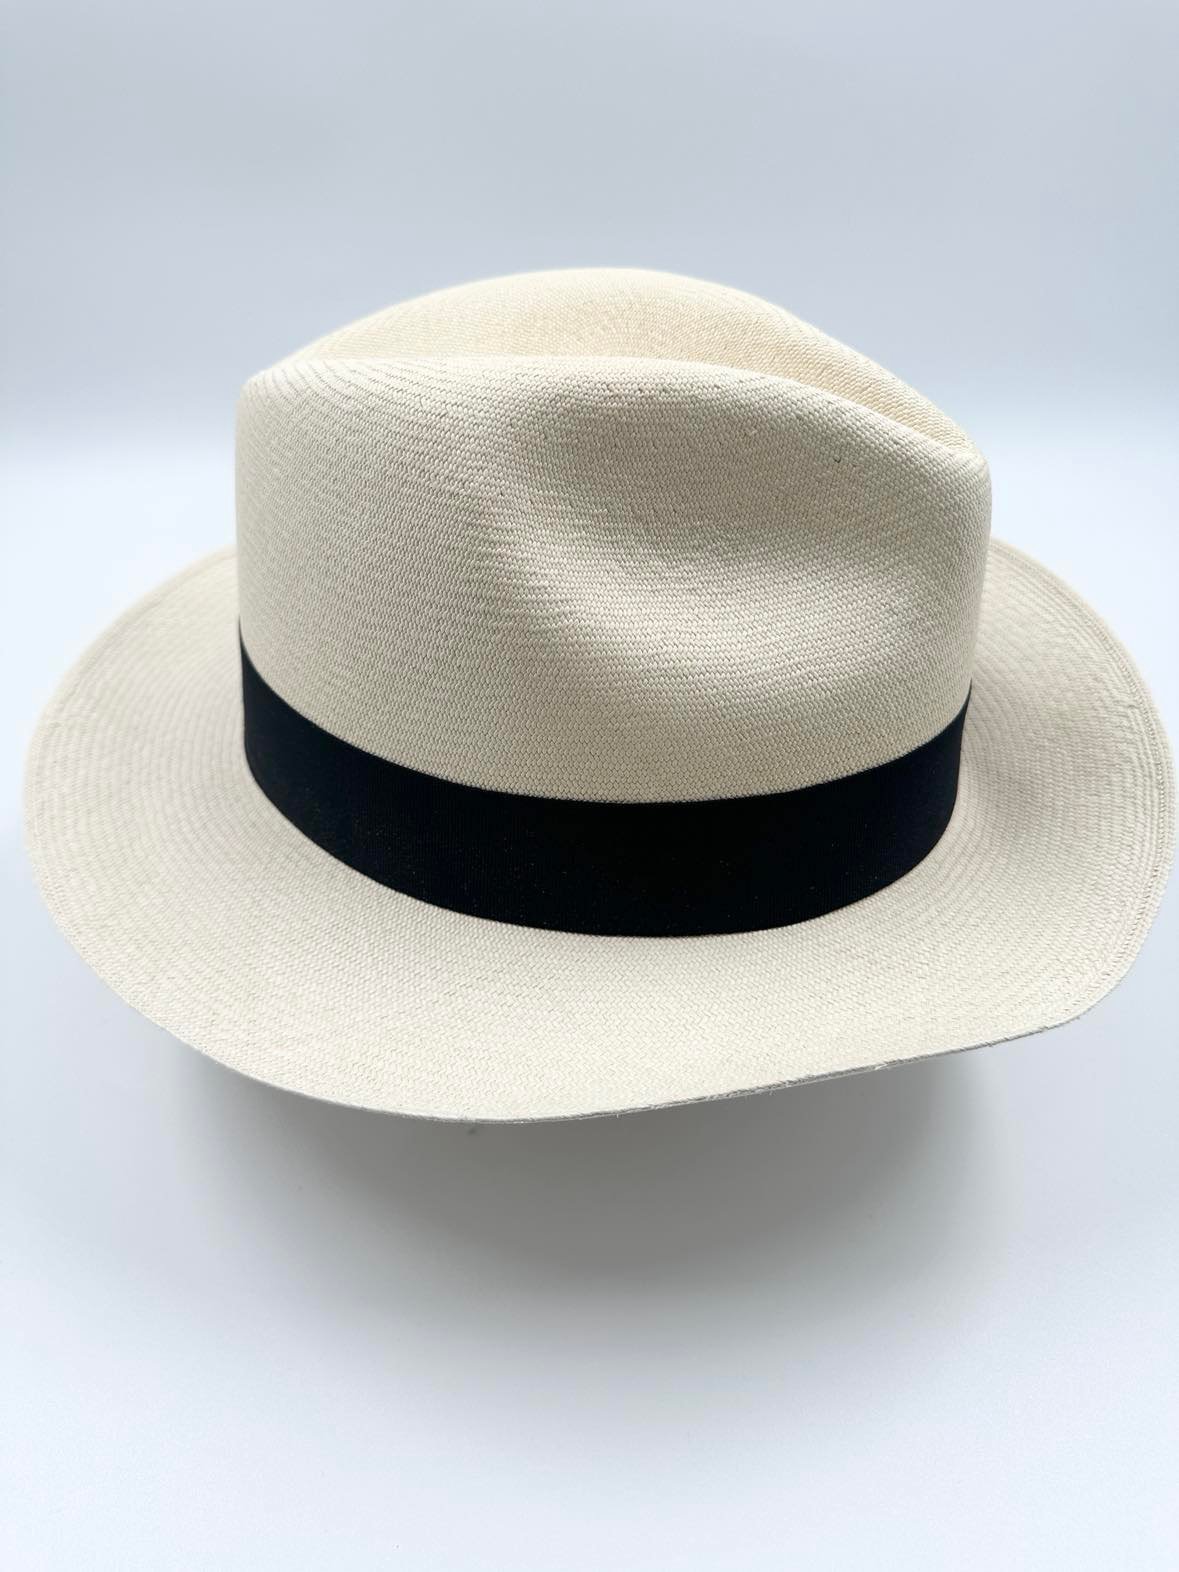 Ægte Montecristi Fedora Panama Hat med en kvalitet på 21-22 fletninger pr. inch - flettet i hånden efter ældgamle pricipper